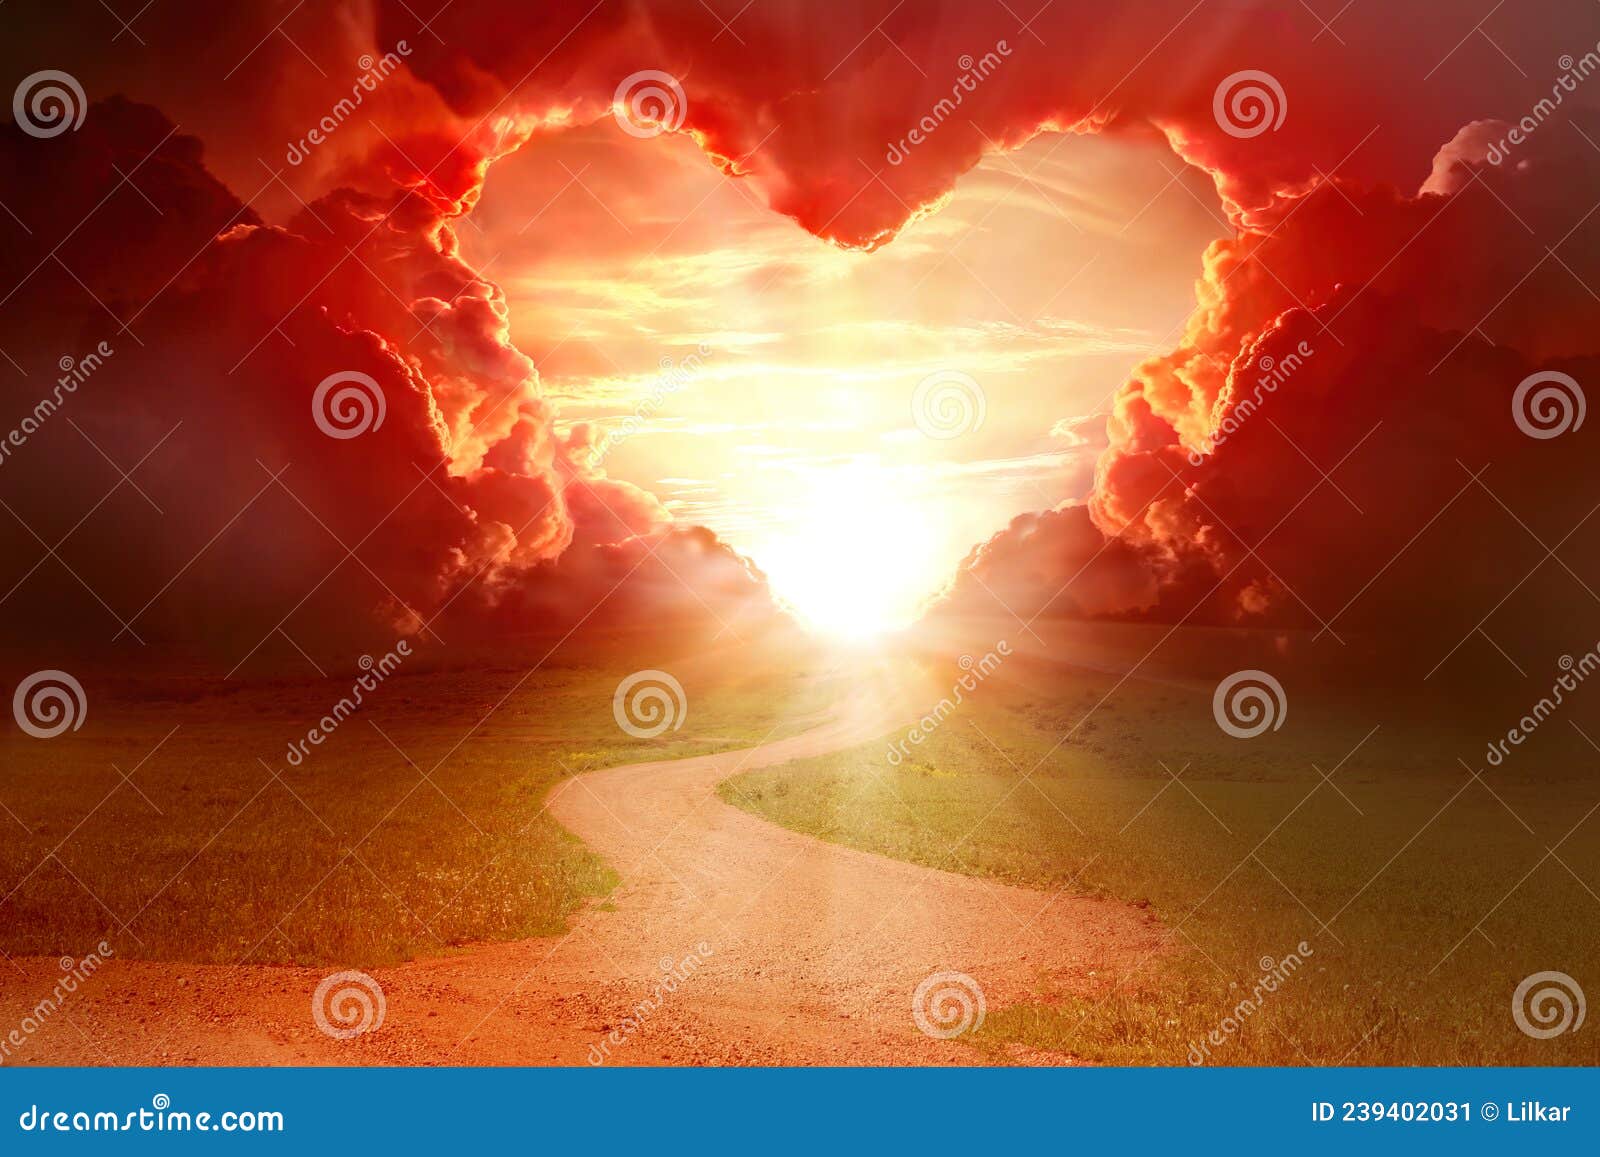 Cảnh tượng chiếc tim đỏ rực rỡ trên một nền tái tê, đem lại cho người xem những cảm xúc ngọt ngào và tràn đầy tình yêu. Nếu bạn là một người lãng mạn, liên tưởng đến những khoảnh khắc đầy cảm hứng, hãy cùng xem bức ảnh này.